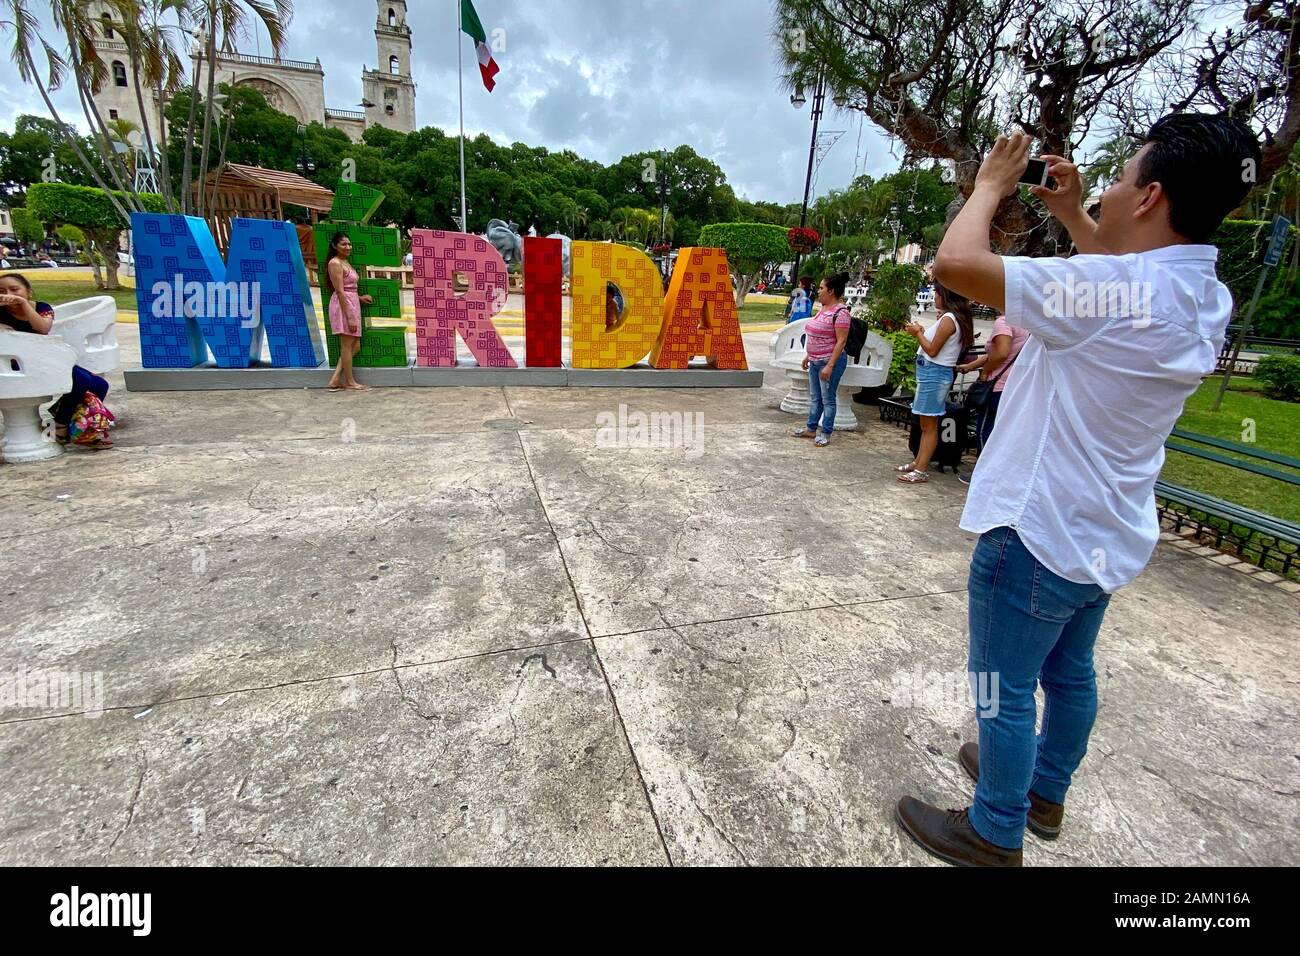 Plaza de la Independencia. Merida, Mexico. Stock Photo